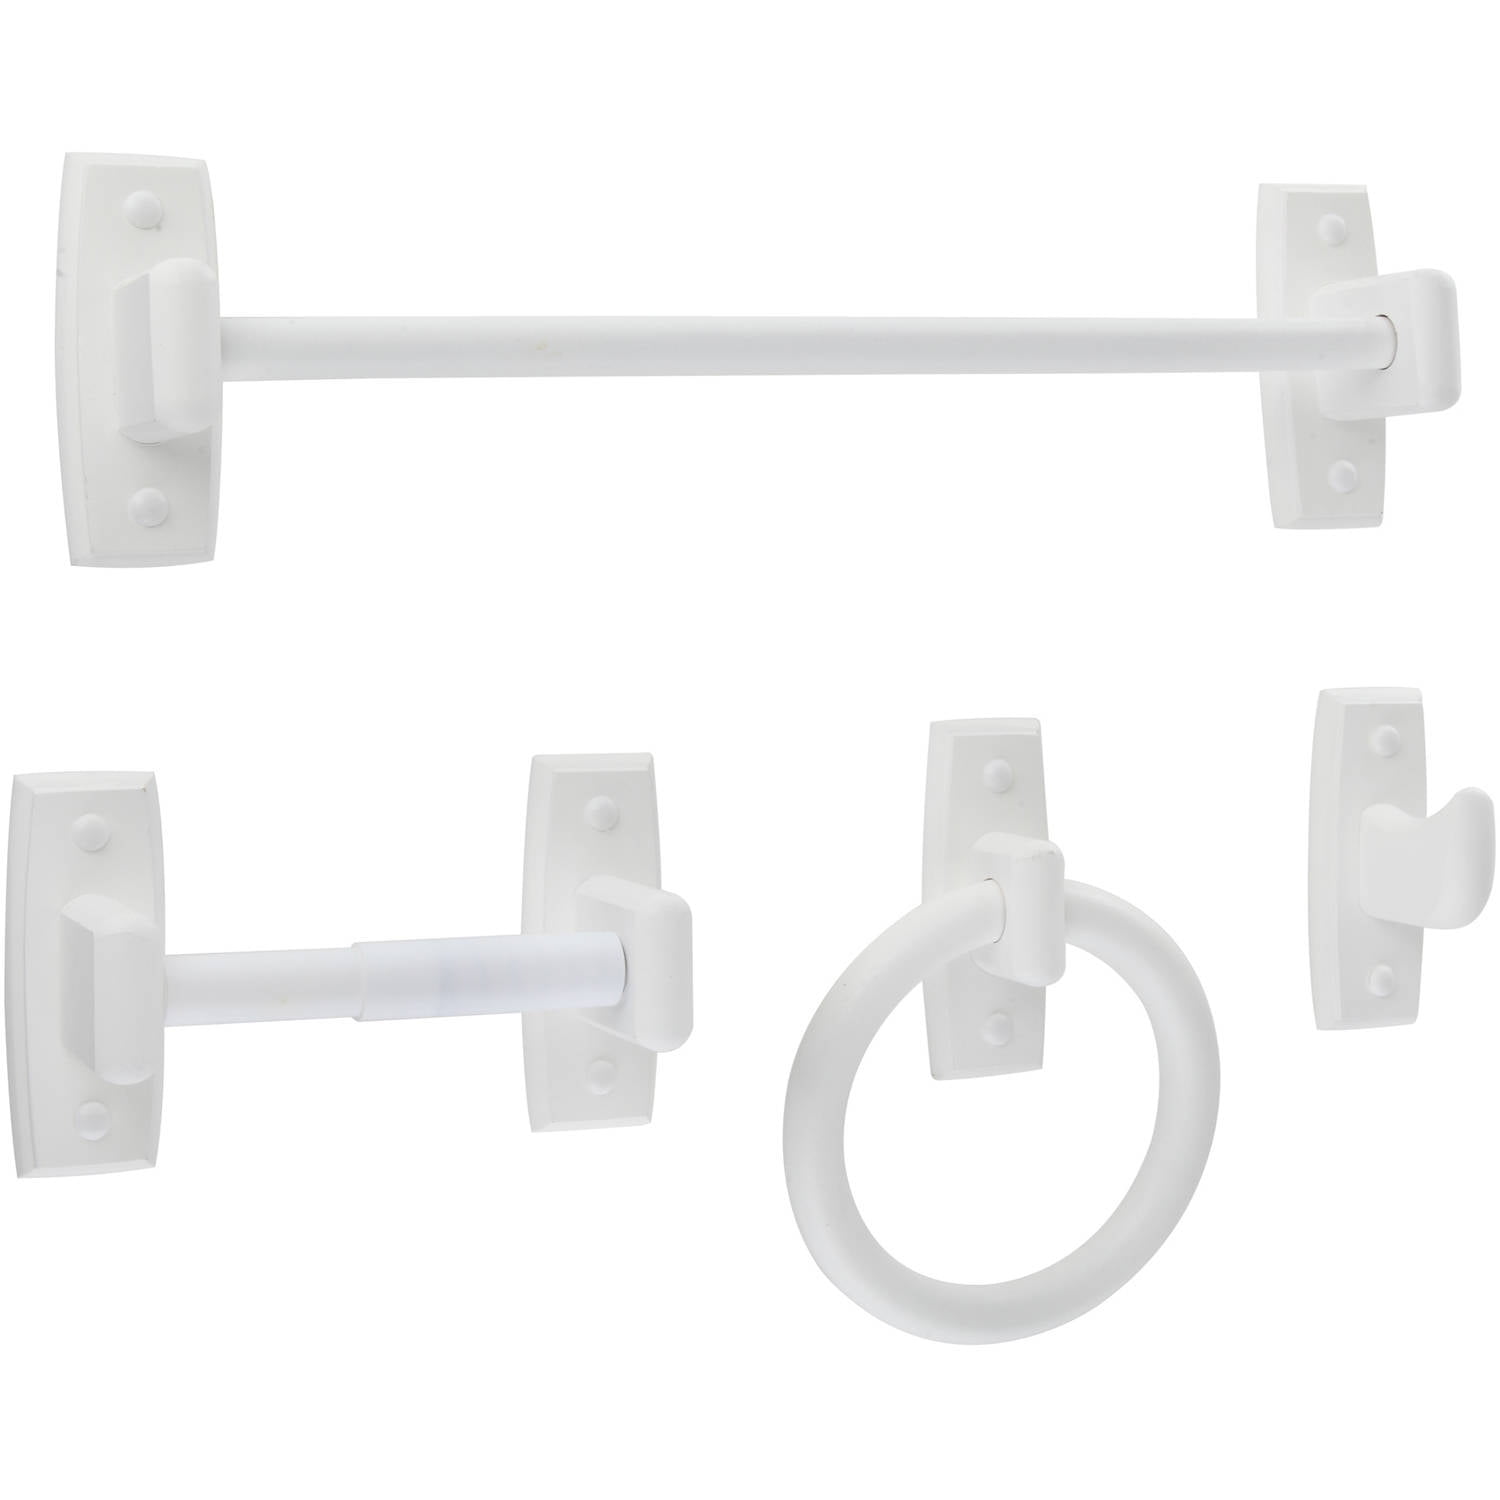 Mainstays 4 Piece White Wooden Bathroom Accessories Set Towel Bar Tissue Holder 